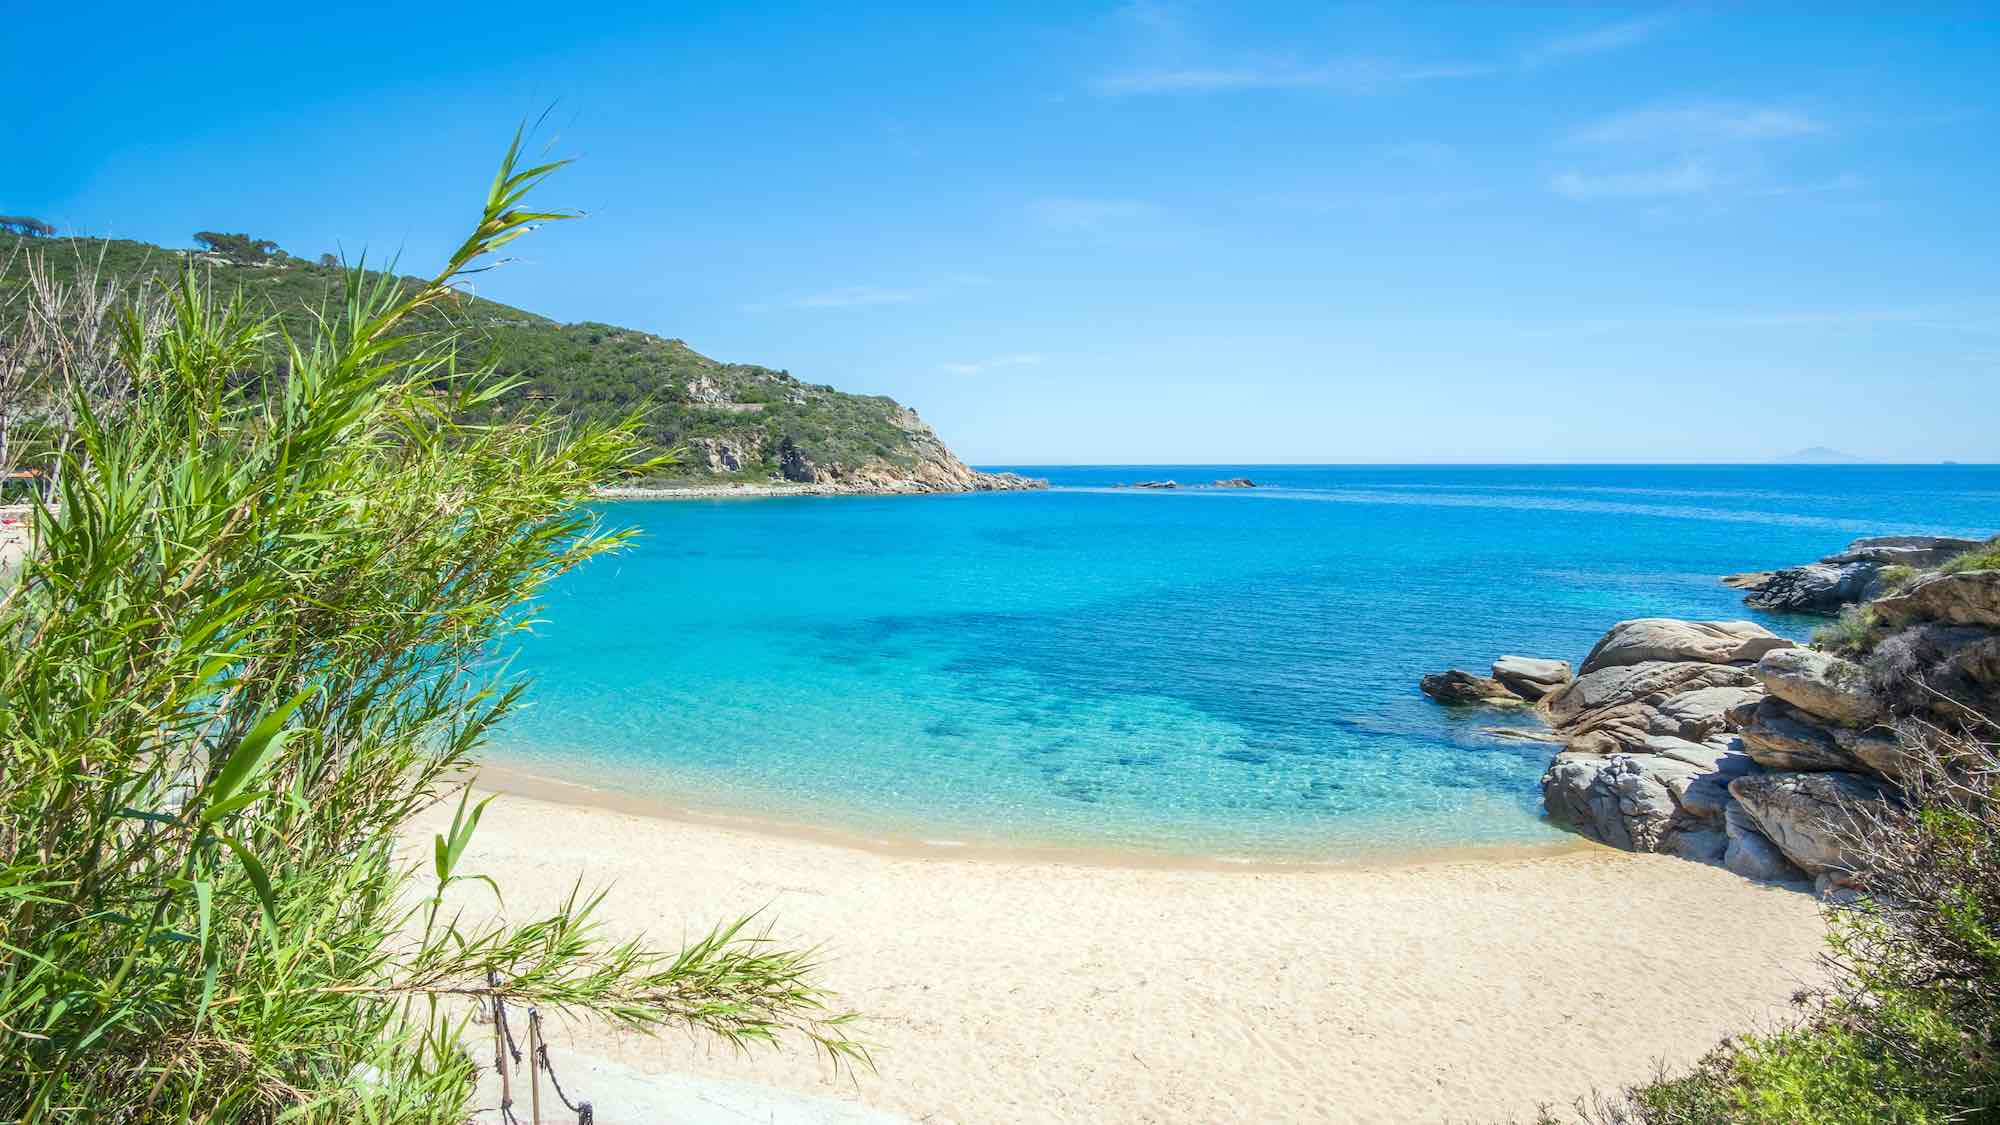 Spiaggia di Cavoli all'Isola d'Elba, una delle più belle spiagge della Toscana